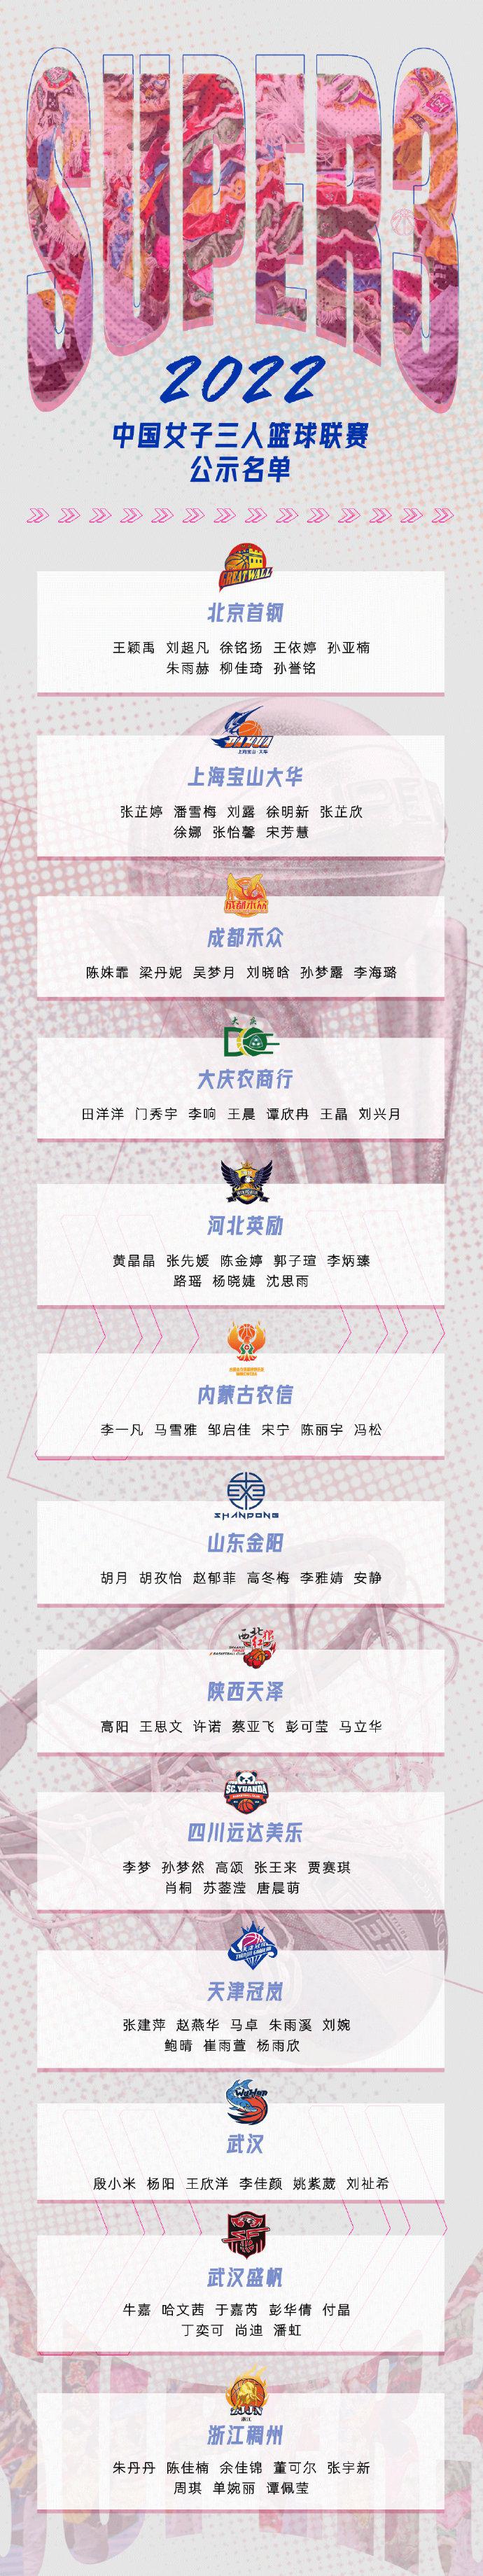 2022赛季中国女子三人篮球联赛俱乐部名单公示(1)